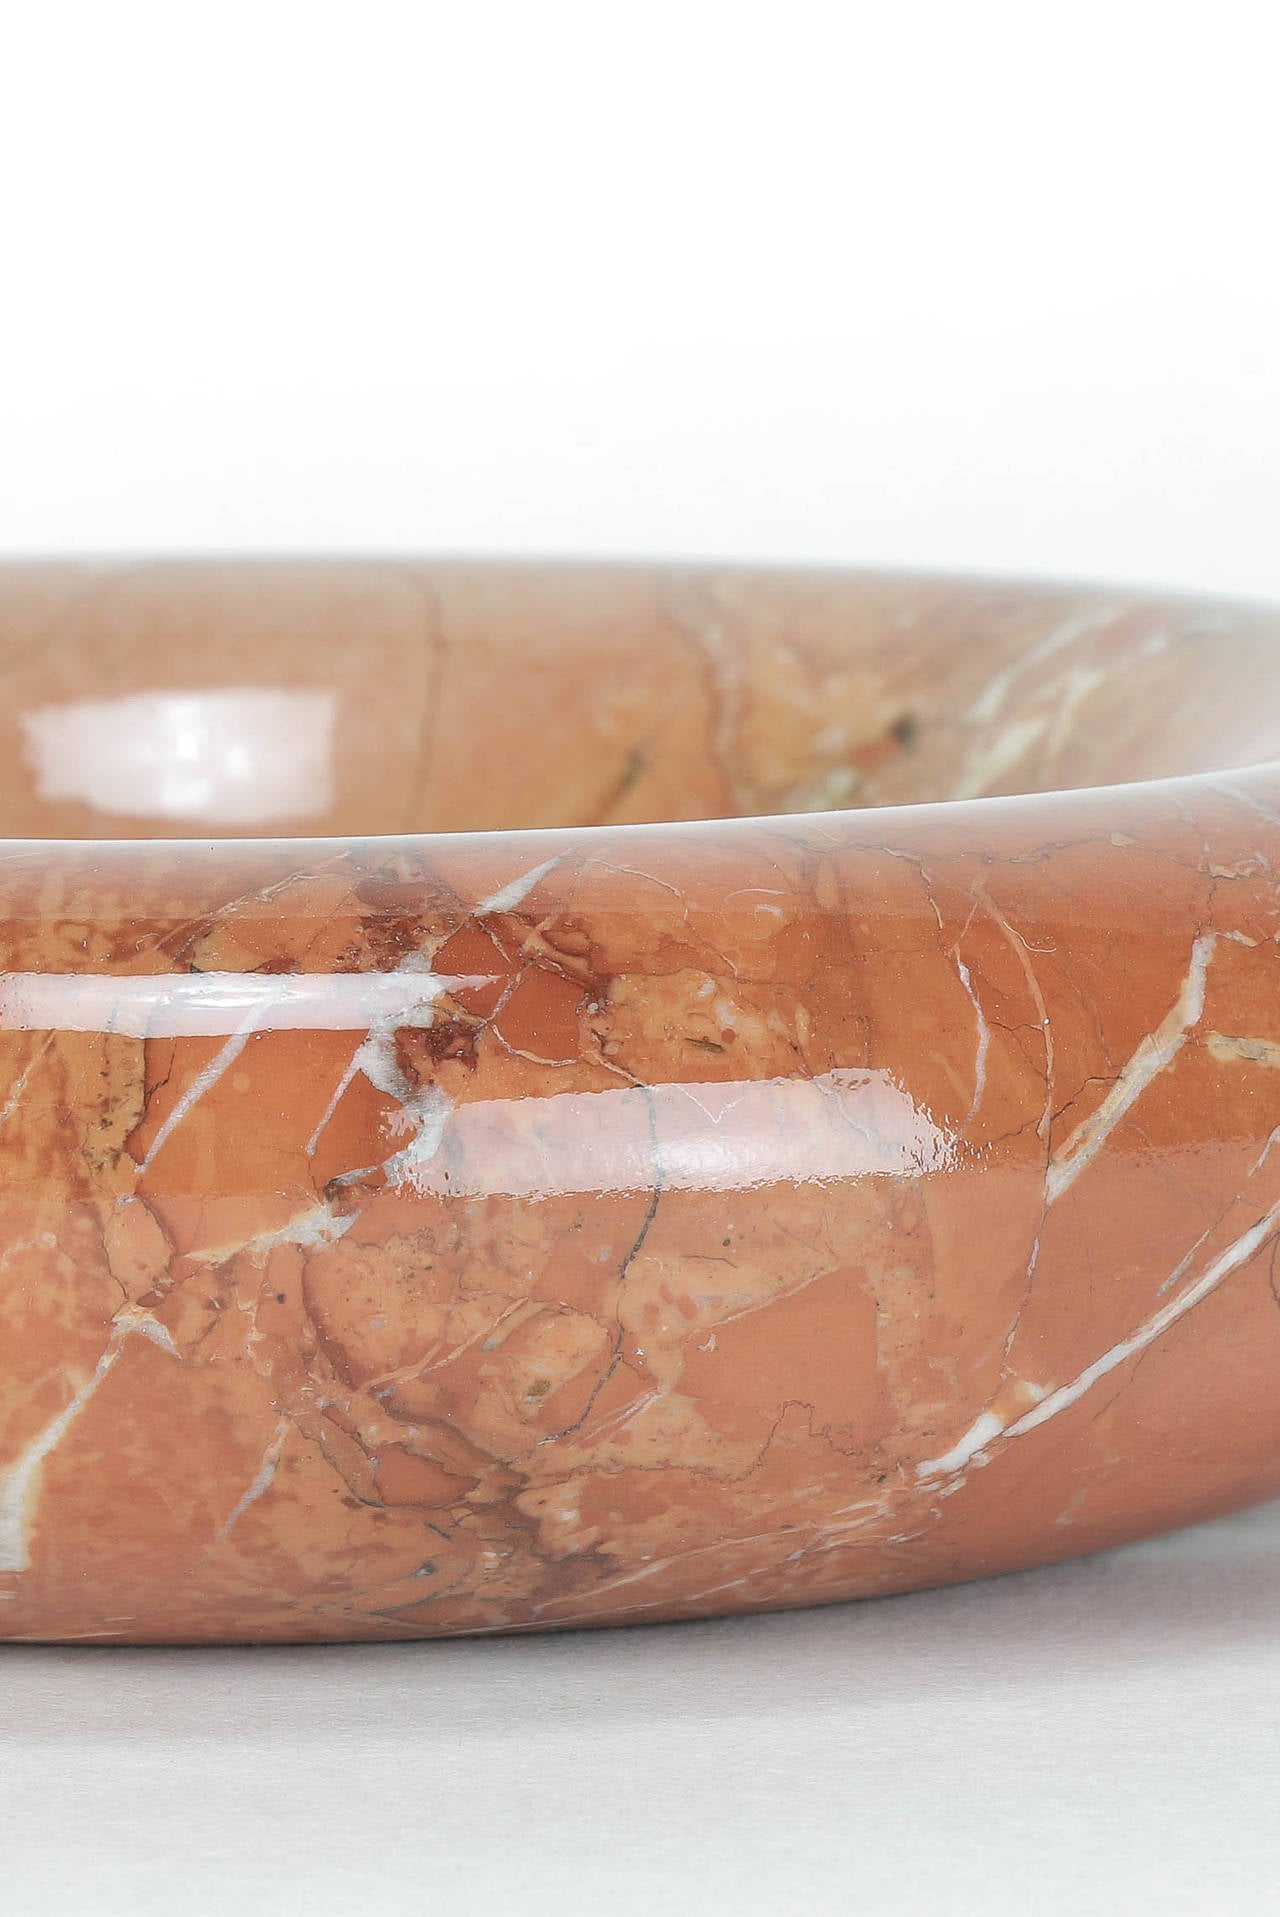 Mid-20th Century Italian Marble Ashtray or Bowl by Sergio Asti 60s